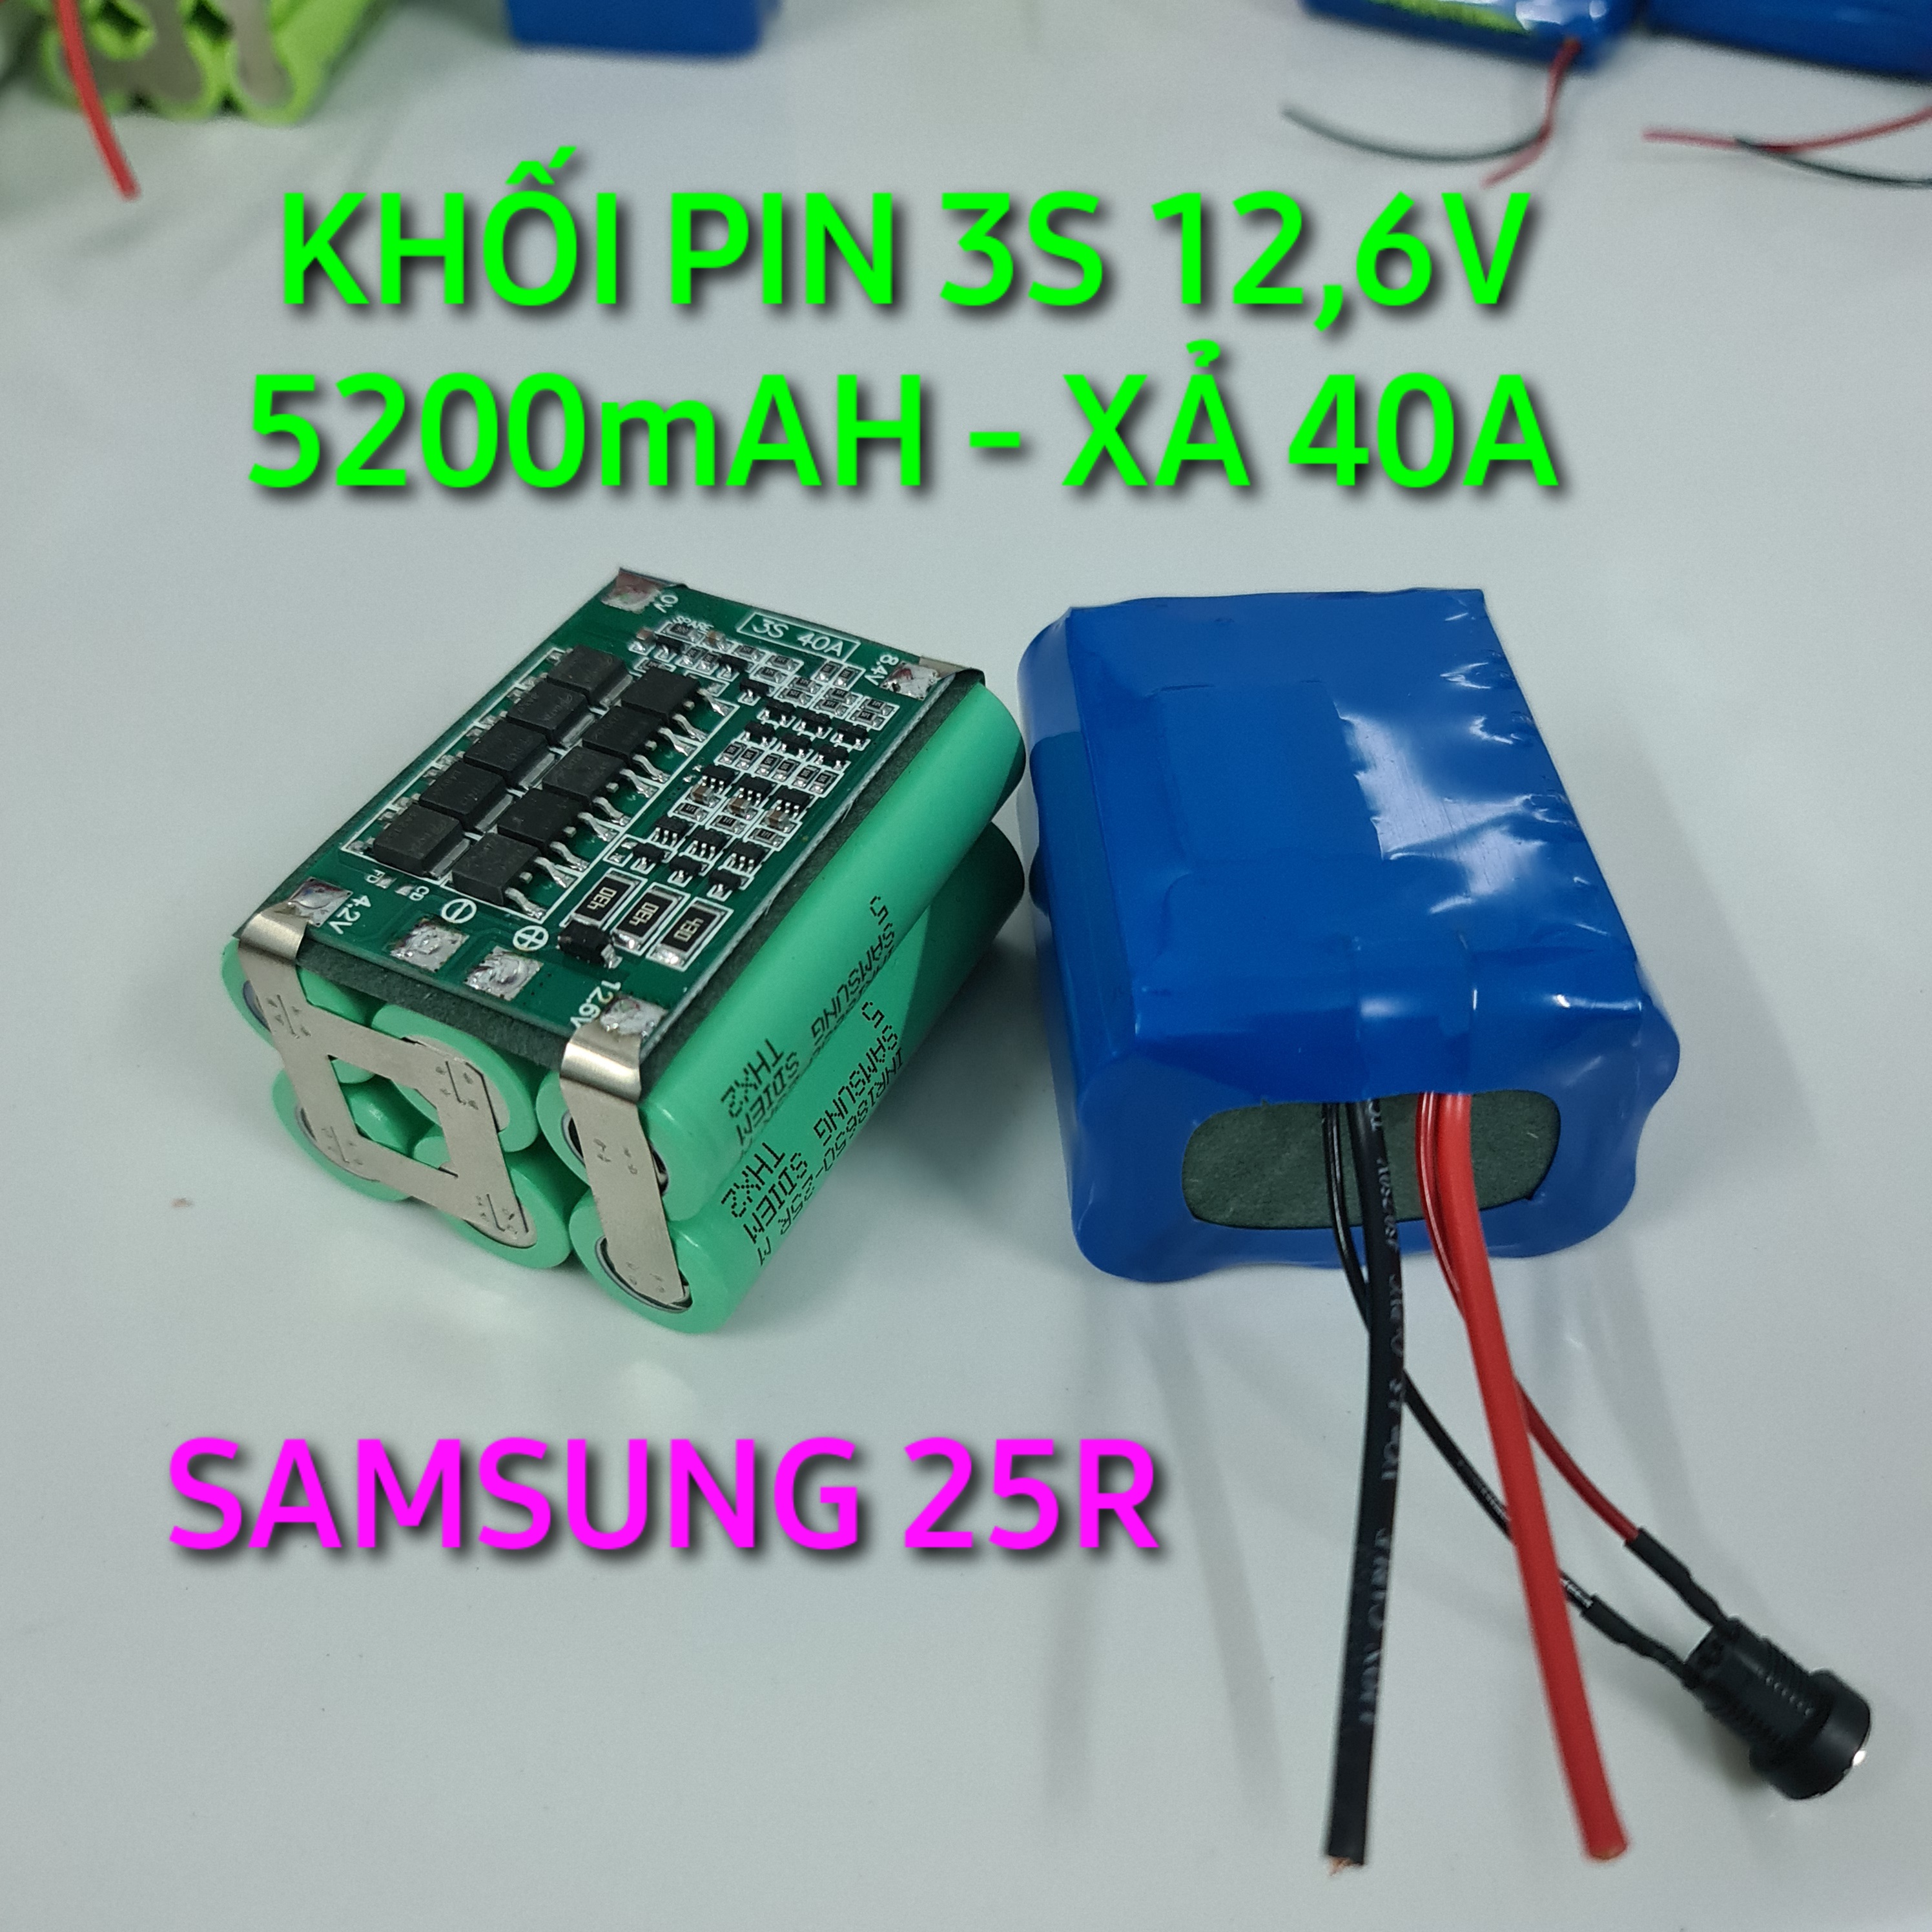 Khối pin SAMSUNG 25R 3S 12,6V 5200mAH (5,2AH). Hàng cao cấp chuyên dùng cho máy nội địa chất lượng. Khối pin 3S 6 cell SAMSUNG 25R Có mạch bảo vệ 3S Dòng xả liên tục 40A - LIMO